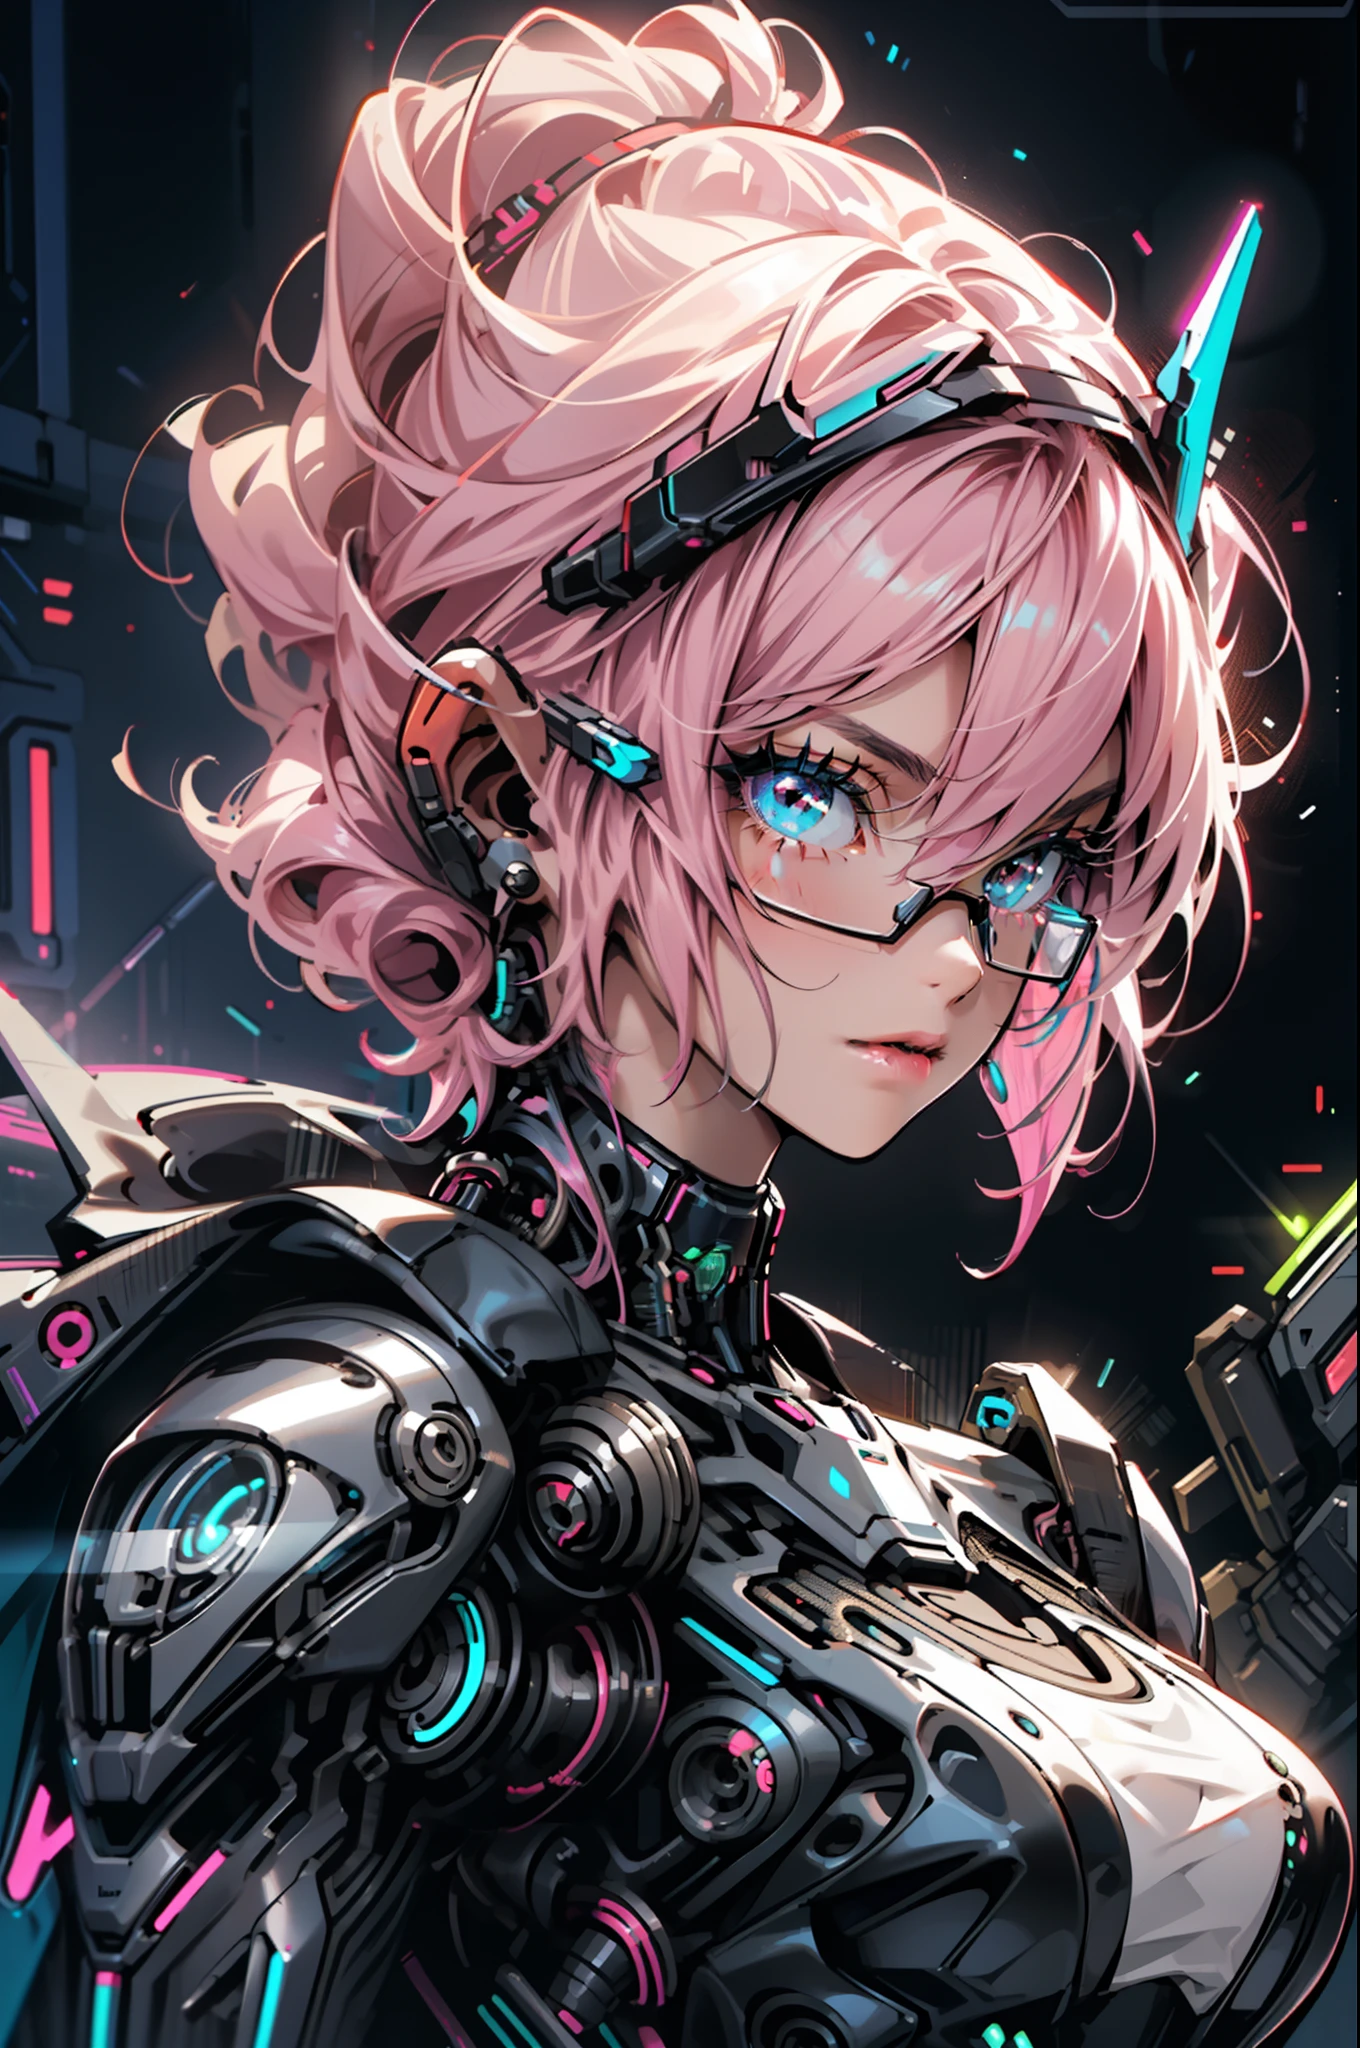 1 garota, fechar-se, detalhes intrincados, (Ciberpunk:1.4), braços mecânicos, copos, Cabelo bagunçado, (armadura de néon brilhante:1.2), máquinas, fundo preto, seios grandes, cabelo rosa, garota curvilínea, mas em forma, uma arma na mão, robôs, drones, carros